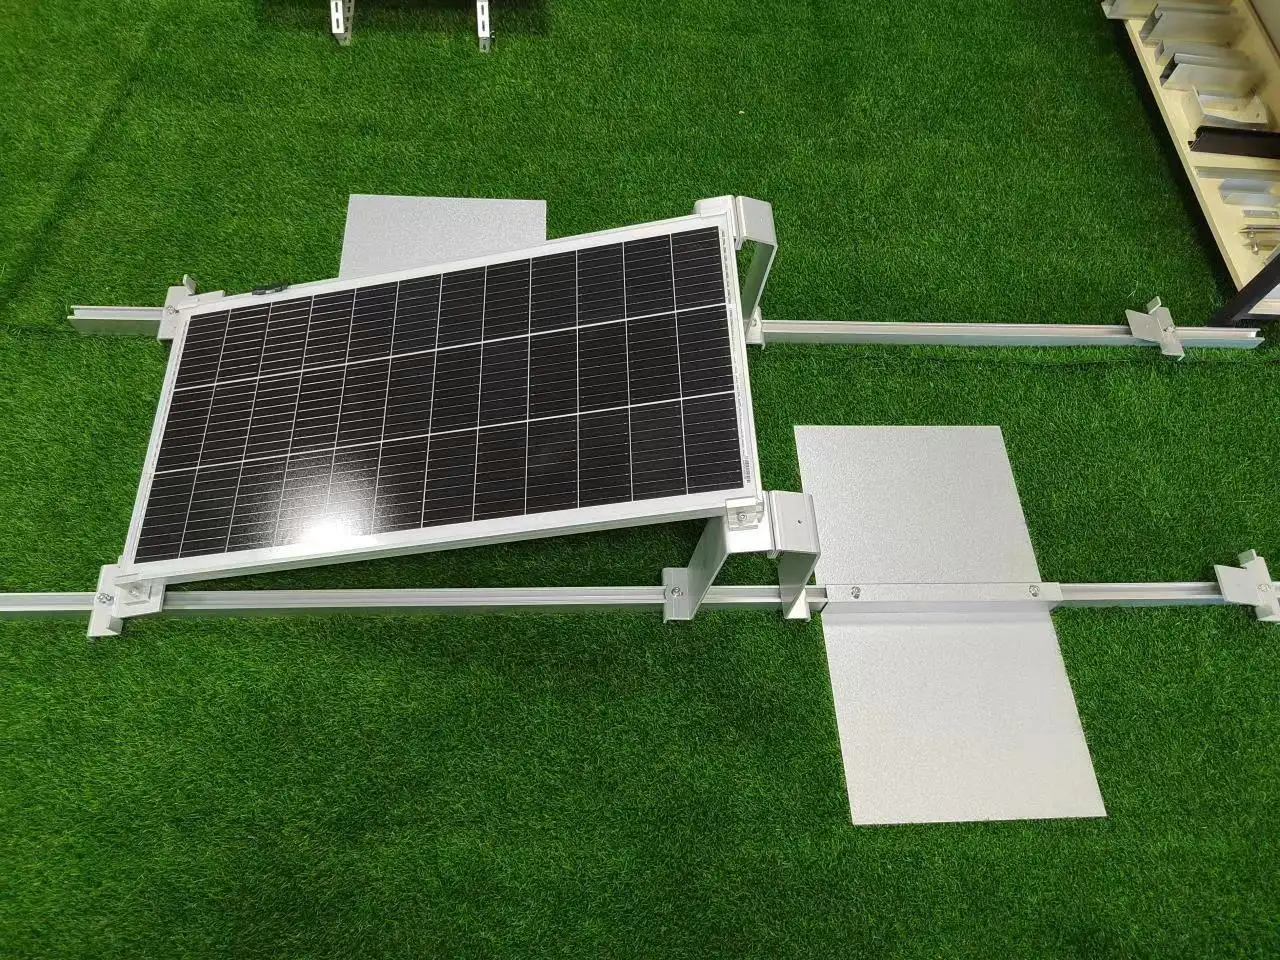 solarenergie bodeneinstallationssystem solarenergieinstallation durch feuerverzinkung